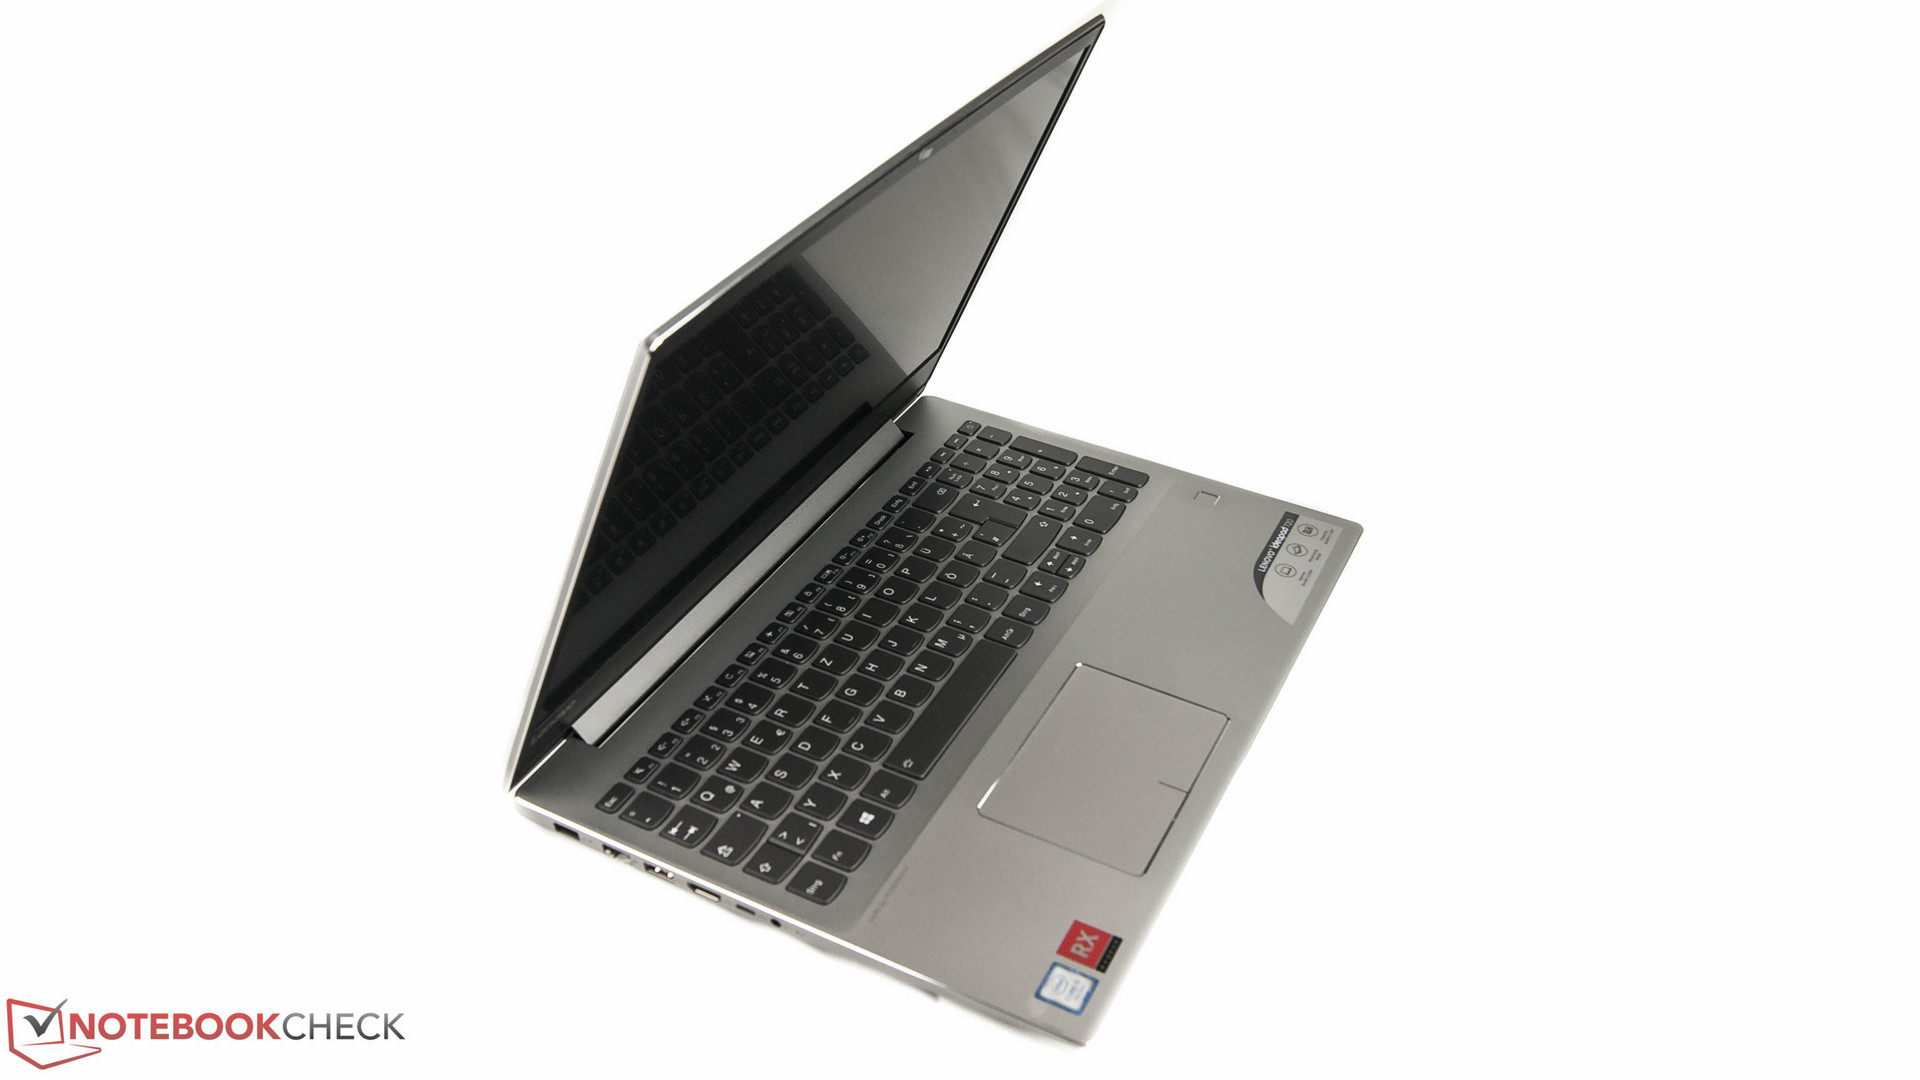 Lenovo IdeaPad 720 (i5-7200U, RX 560) Laptop Review - NotebookCheck.net